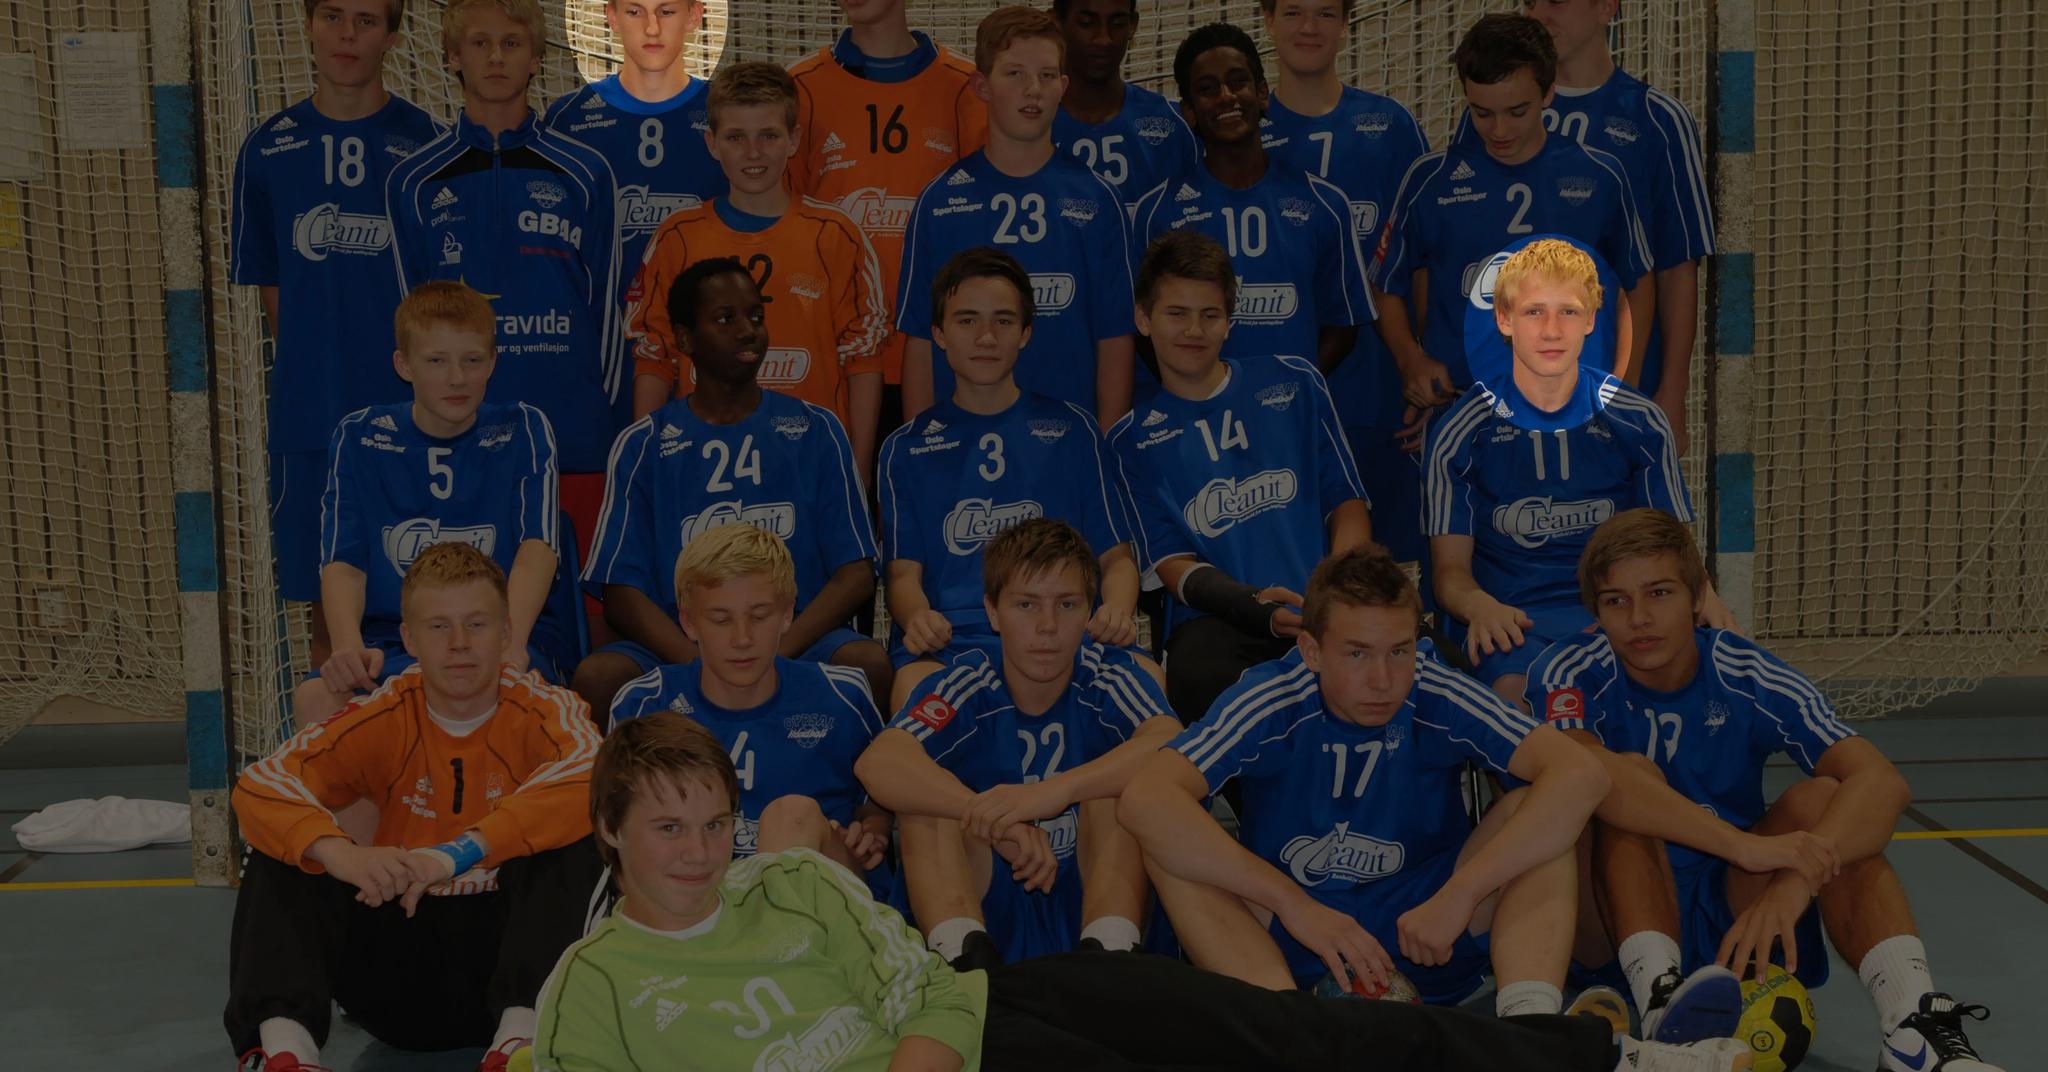 Her er Oppsals G96-lag under en turnering i 2011. Sander Øverjordet (15) og Kevin Gulliksen (14) er nå blitt landslagsspillere.